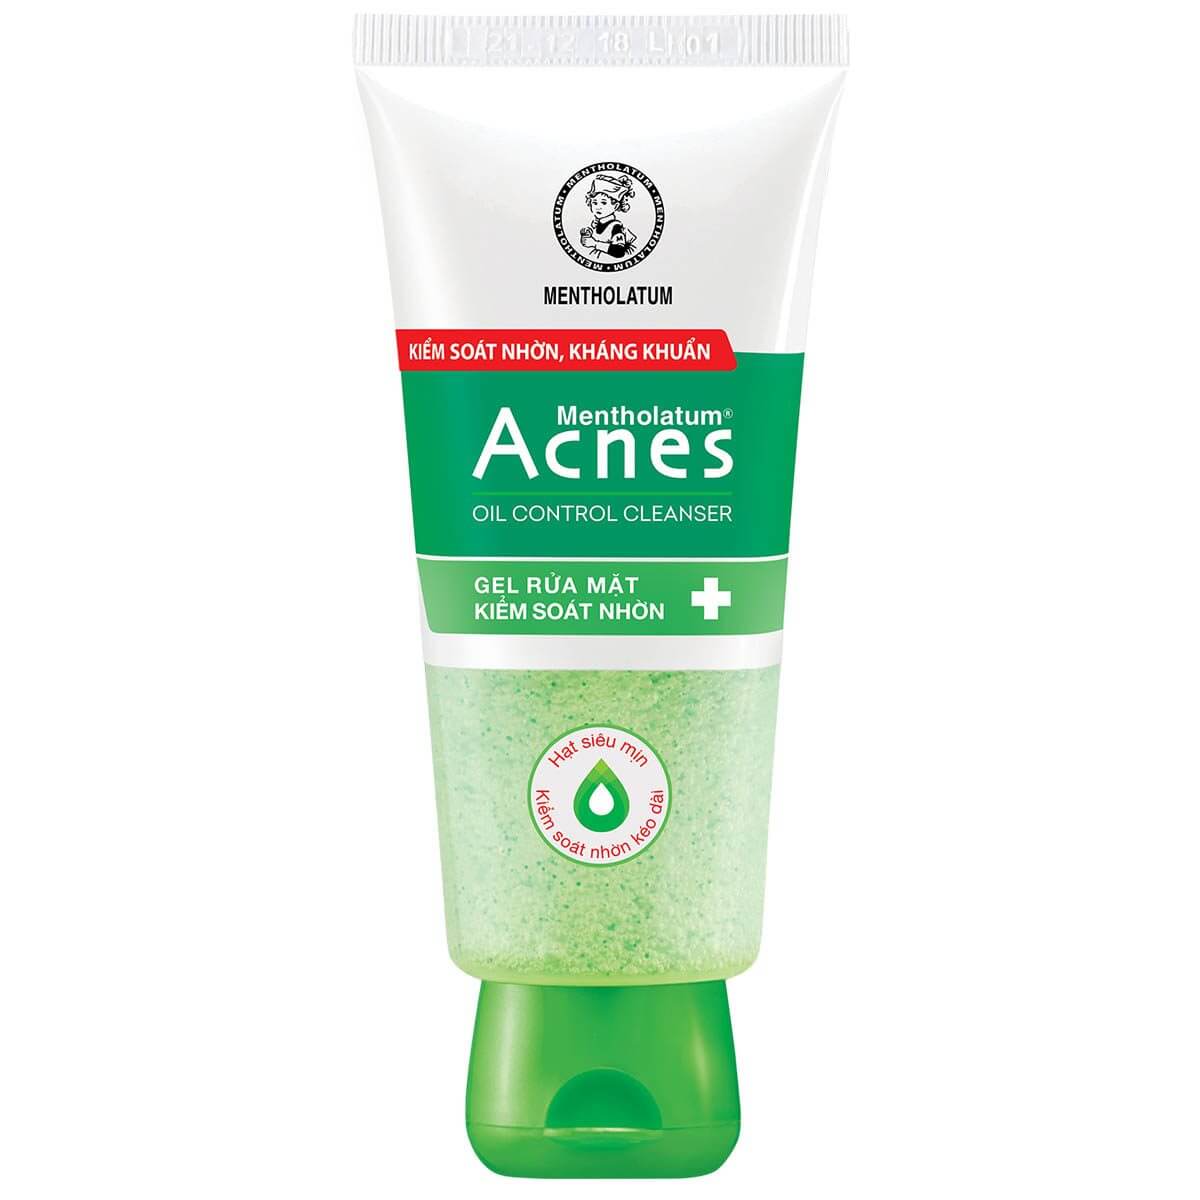 Acnes Oil Control Cleanser - Gel Rửa Mặt Kiểm Soát Nhờn - Acnes kem trị mụn và ngăn ngừa mụn